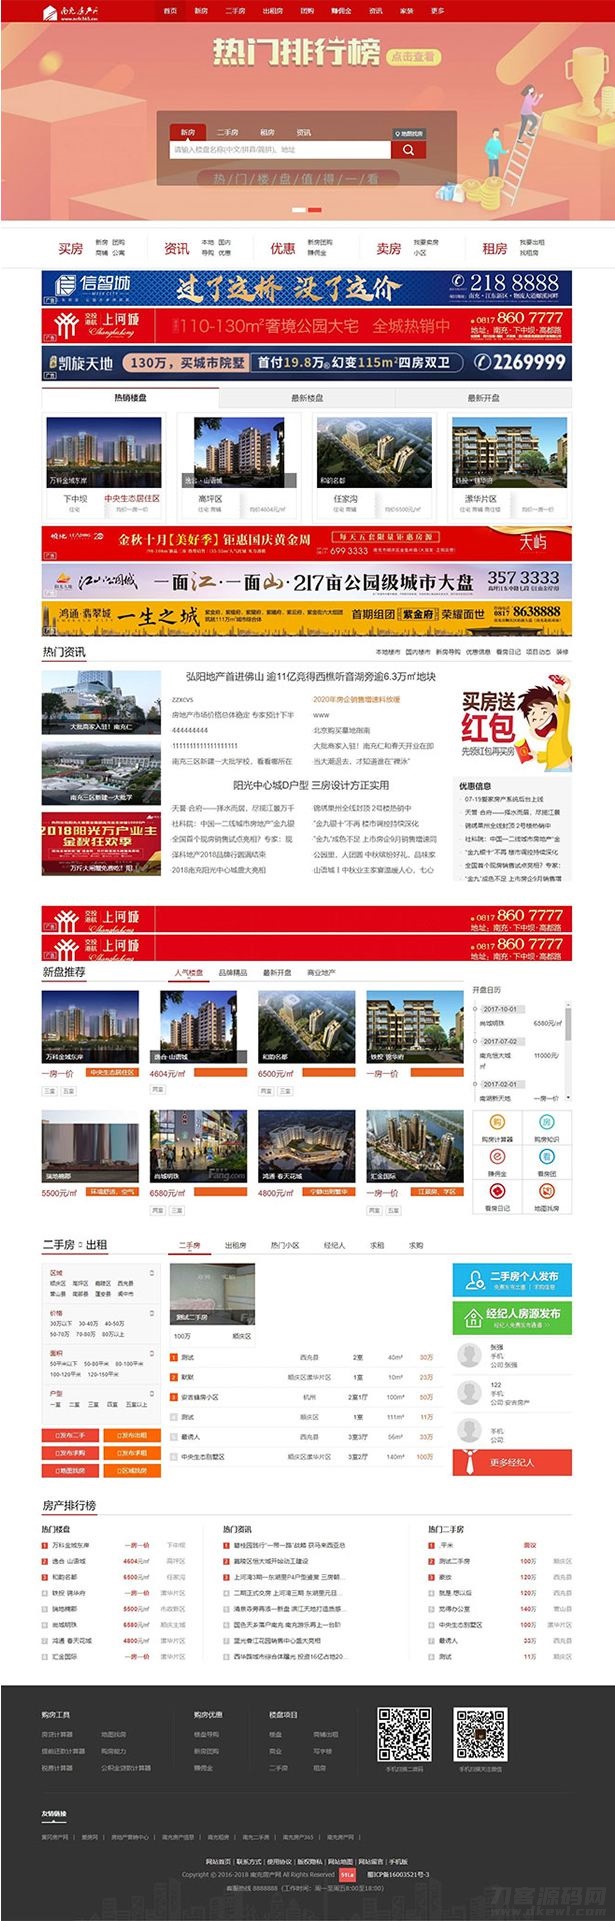 2021-05-10爱家Aijiacms红色高端大型房产门户系统V9网站源码 带手机版-蟹程序